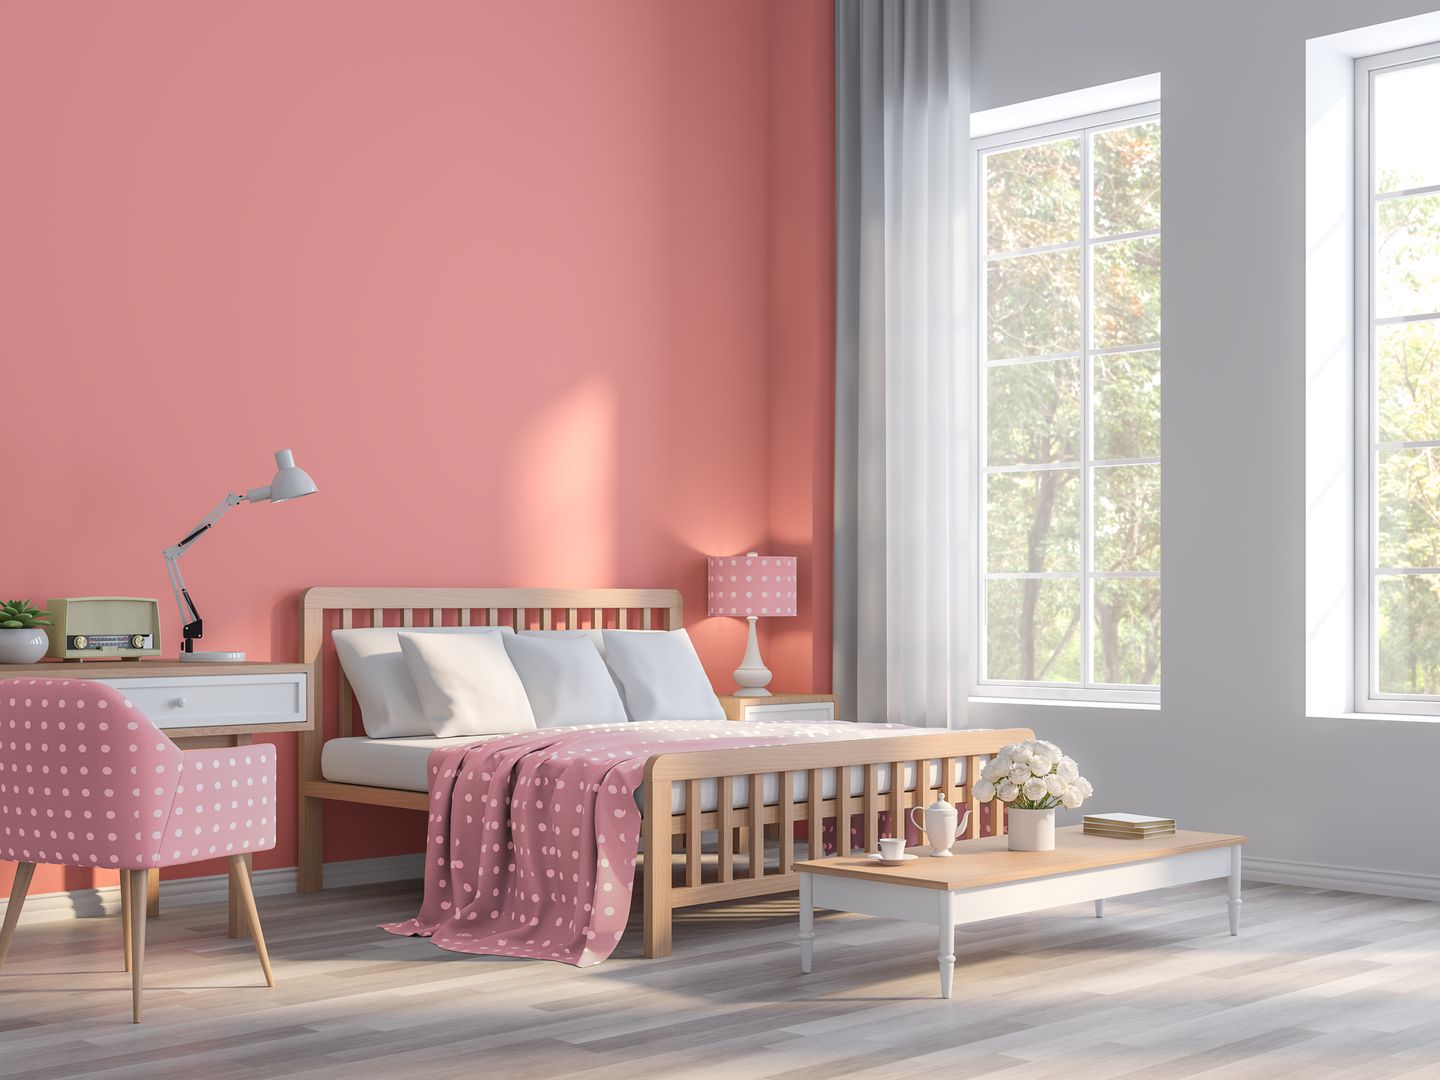 Warna cat kamar tidur yang menenangkan coral pink memberi kesan elegan dan sejuk.